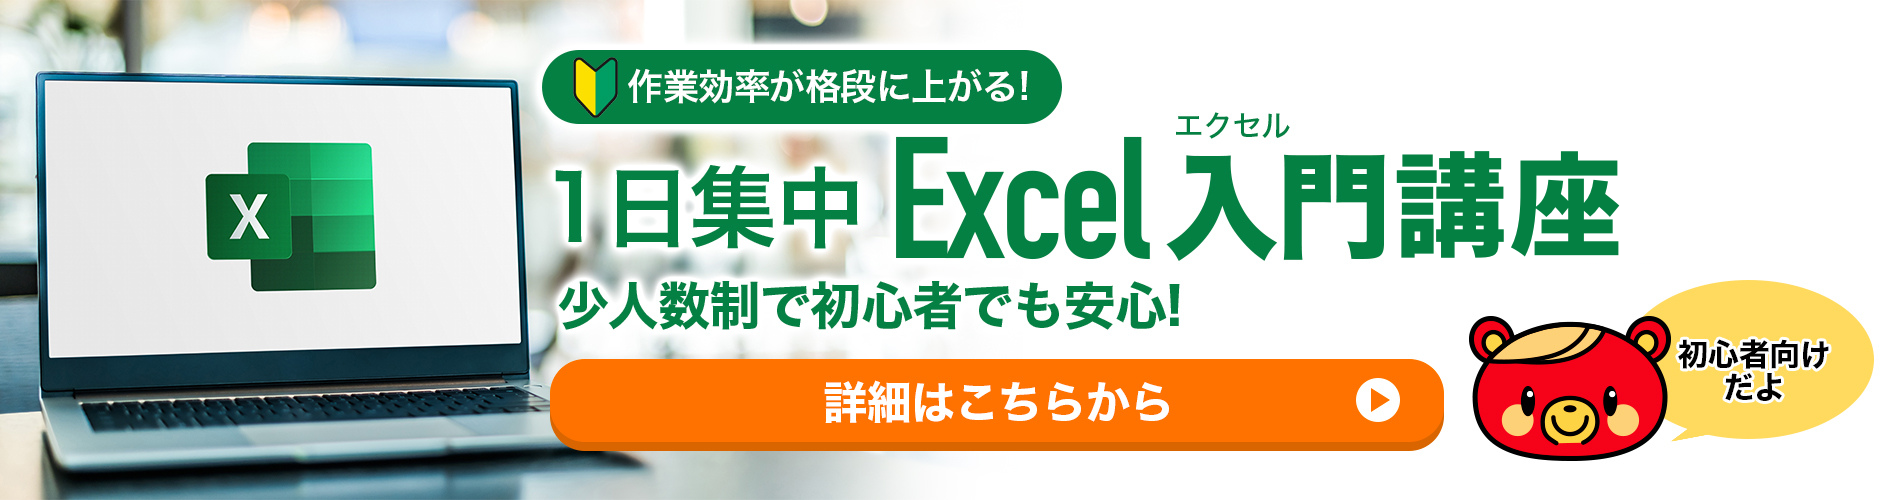 1日集中Excel入門講座